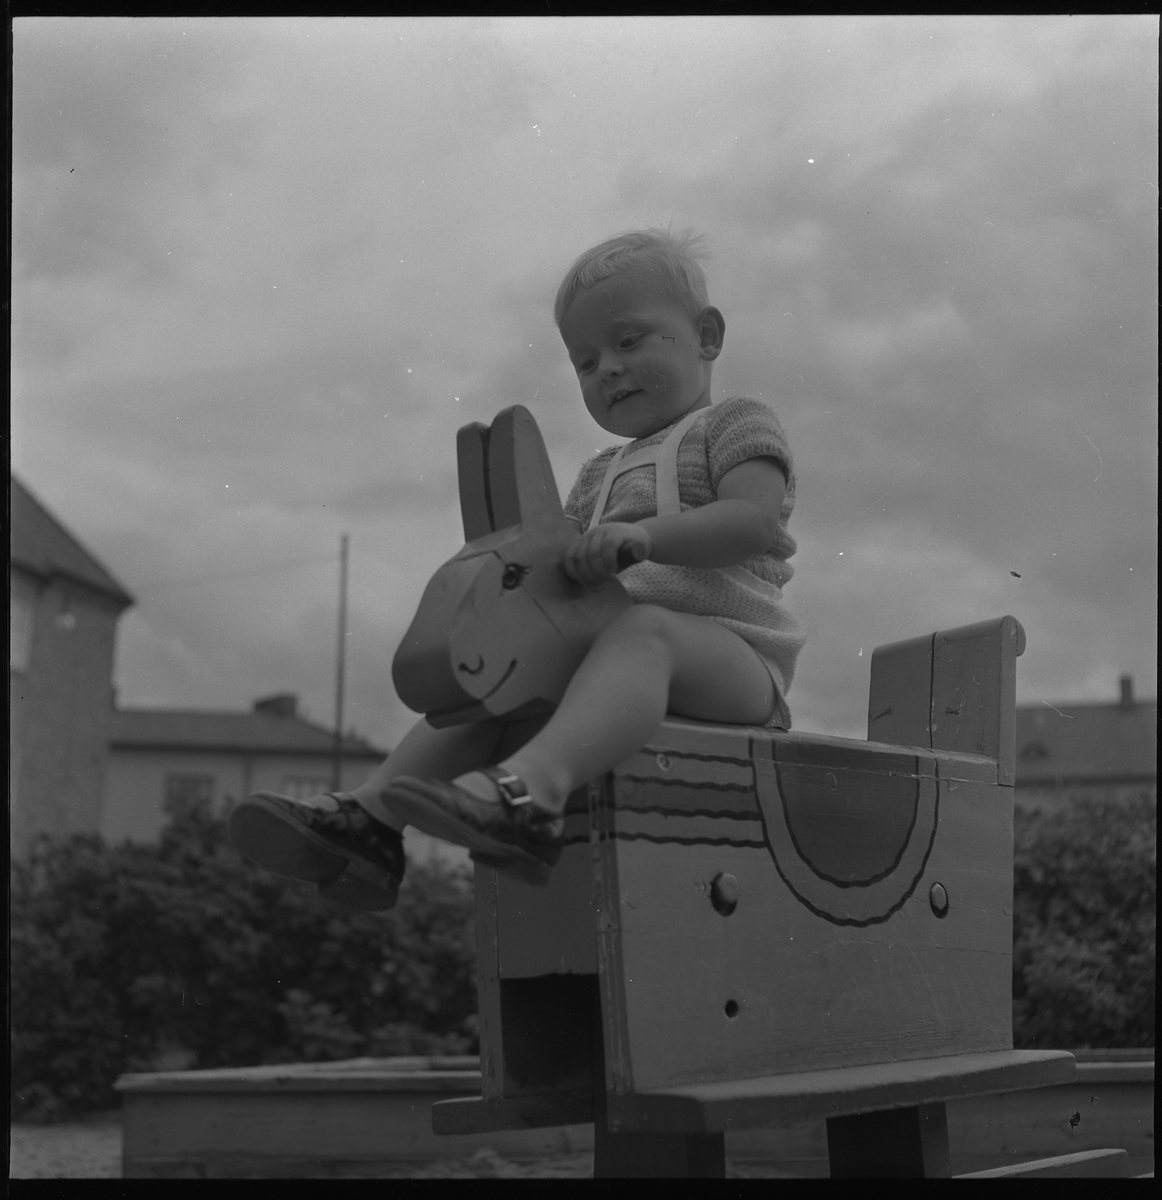 Okänd pojke på lekplats, aug 1950